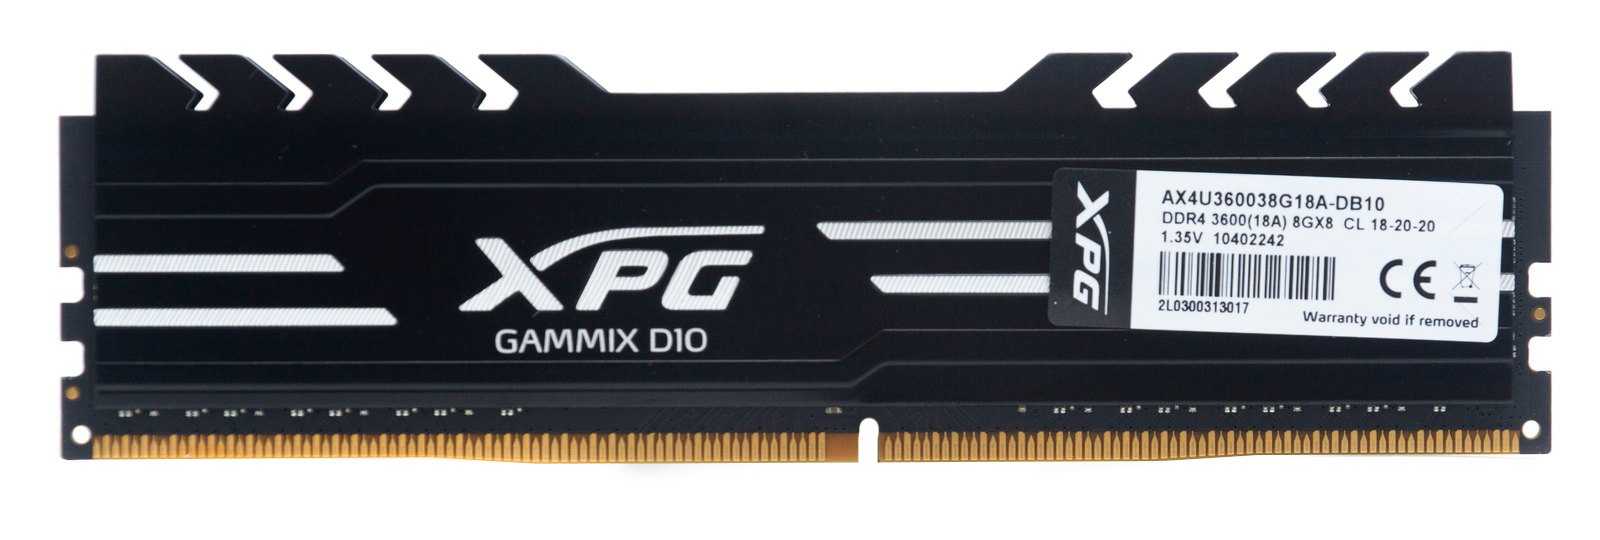 Xpg оперативная память ddr4 gammix